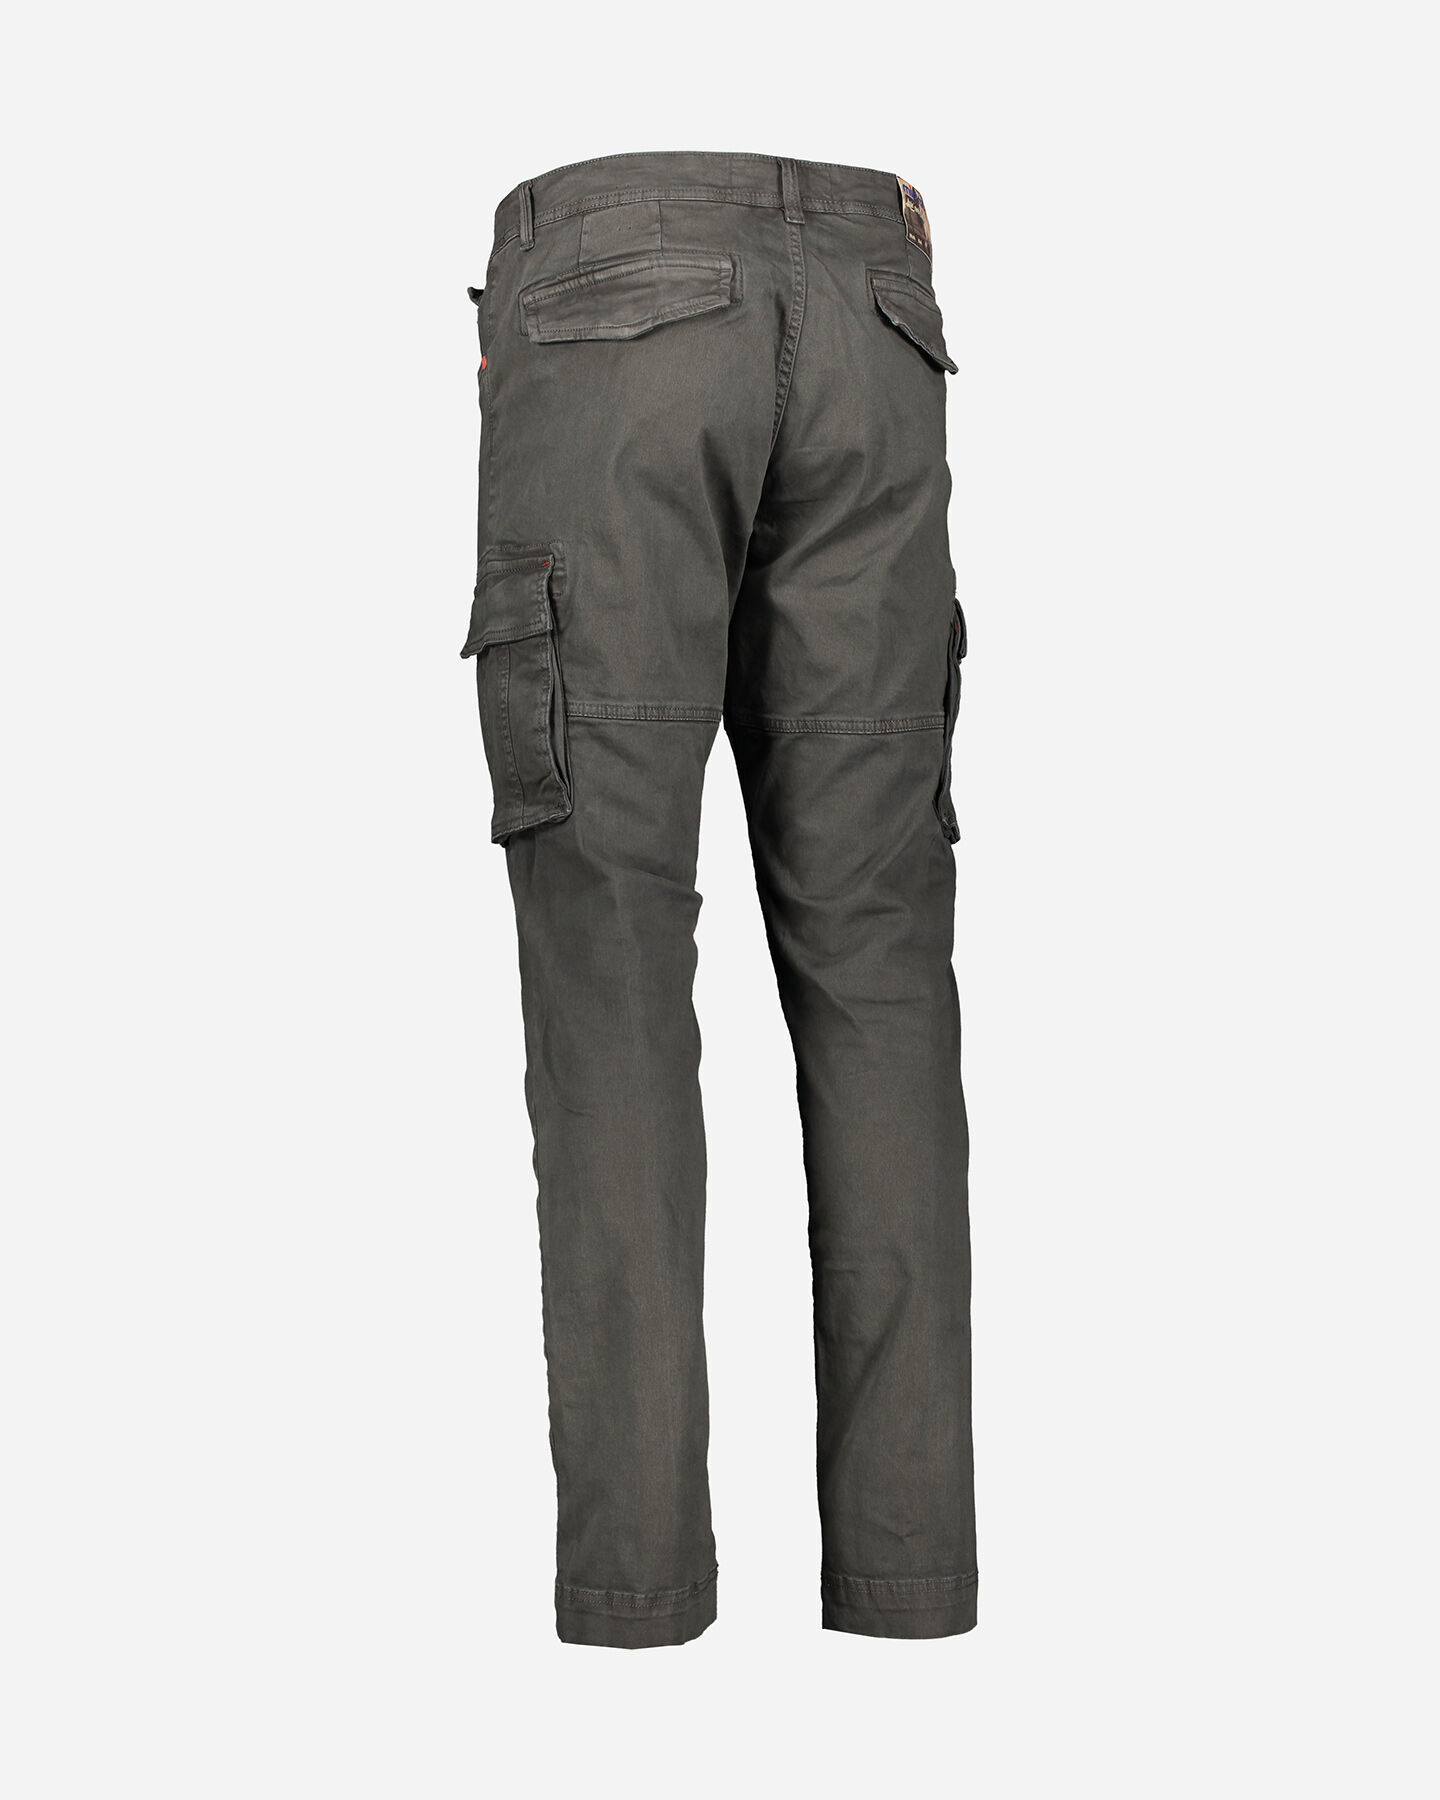  Pantalone MISTRAL SLIM TASCONATO M S4079636|910|44 scatto 5